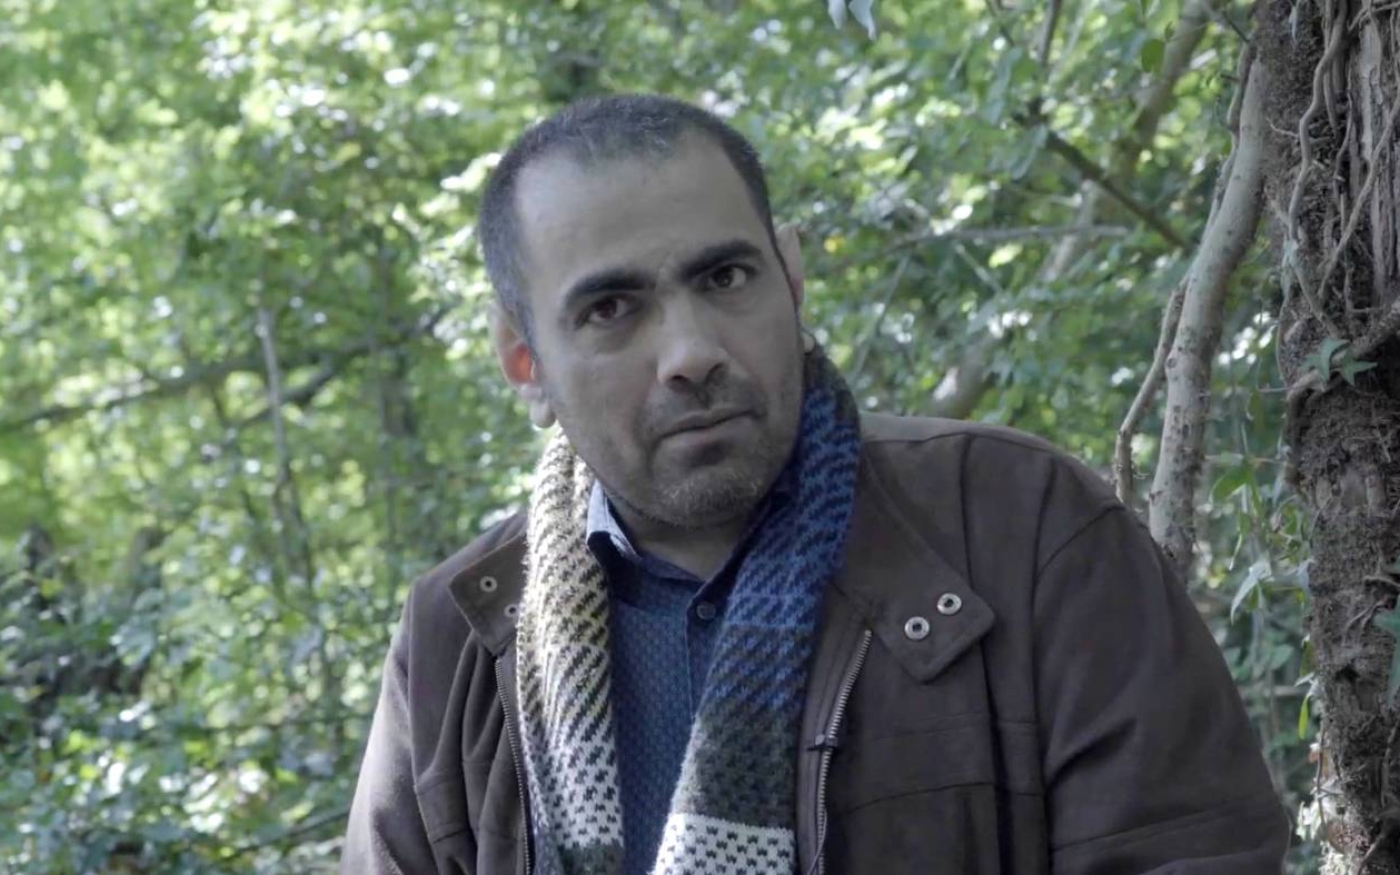 Ghanem al-Masarir : « Ce piratage m’affecte dans ma vie professionnelle, ma vie personnelle, partout » (MEE)